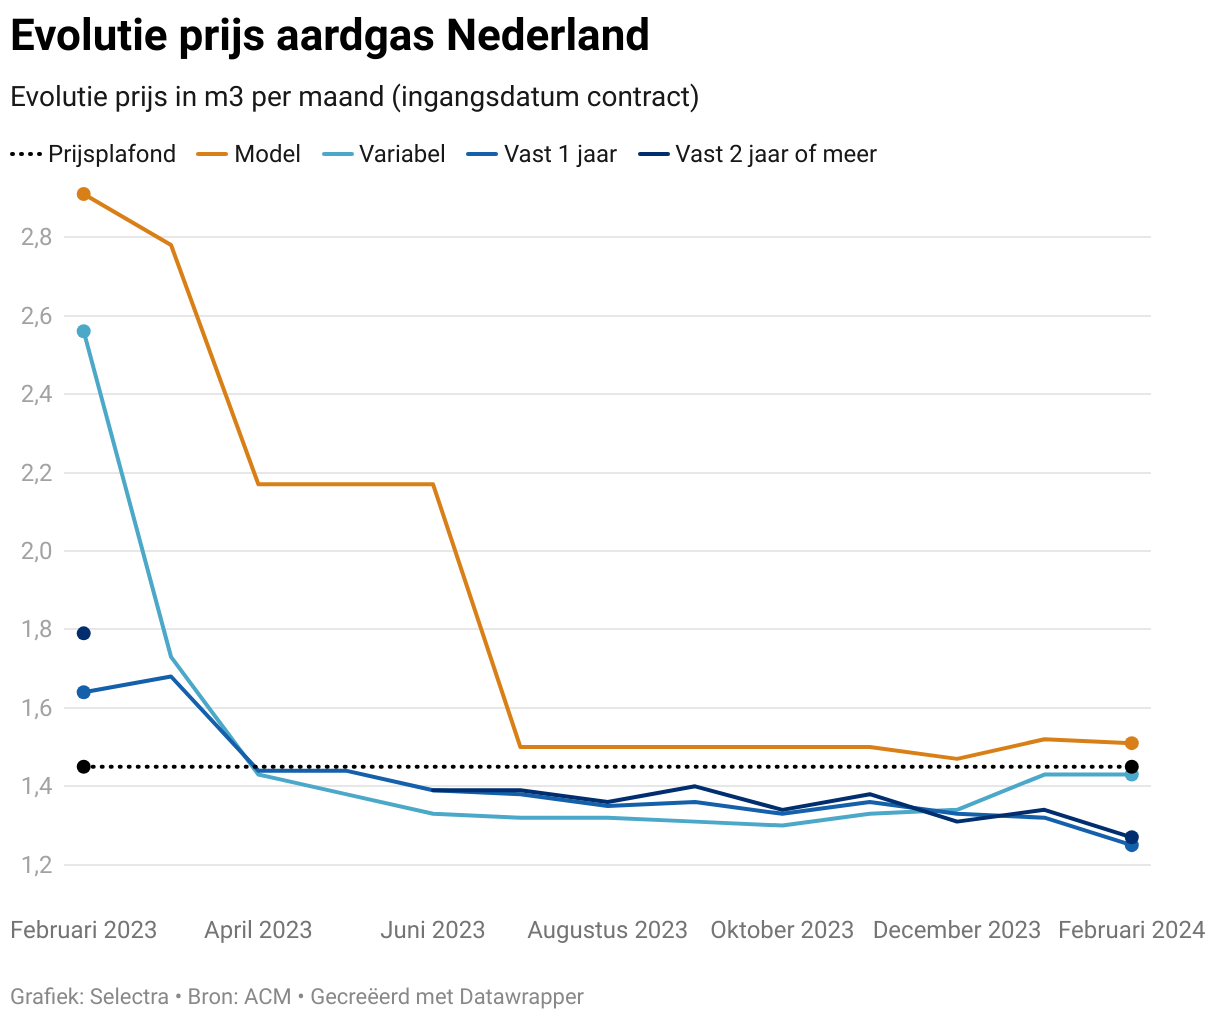 Grafiek met de prijsevolutie van gascontracten in Nederland